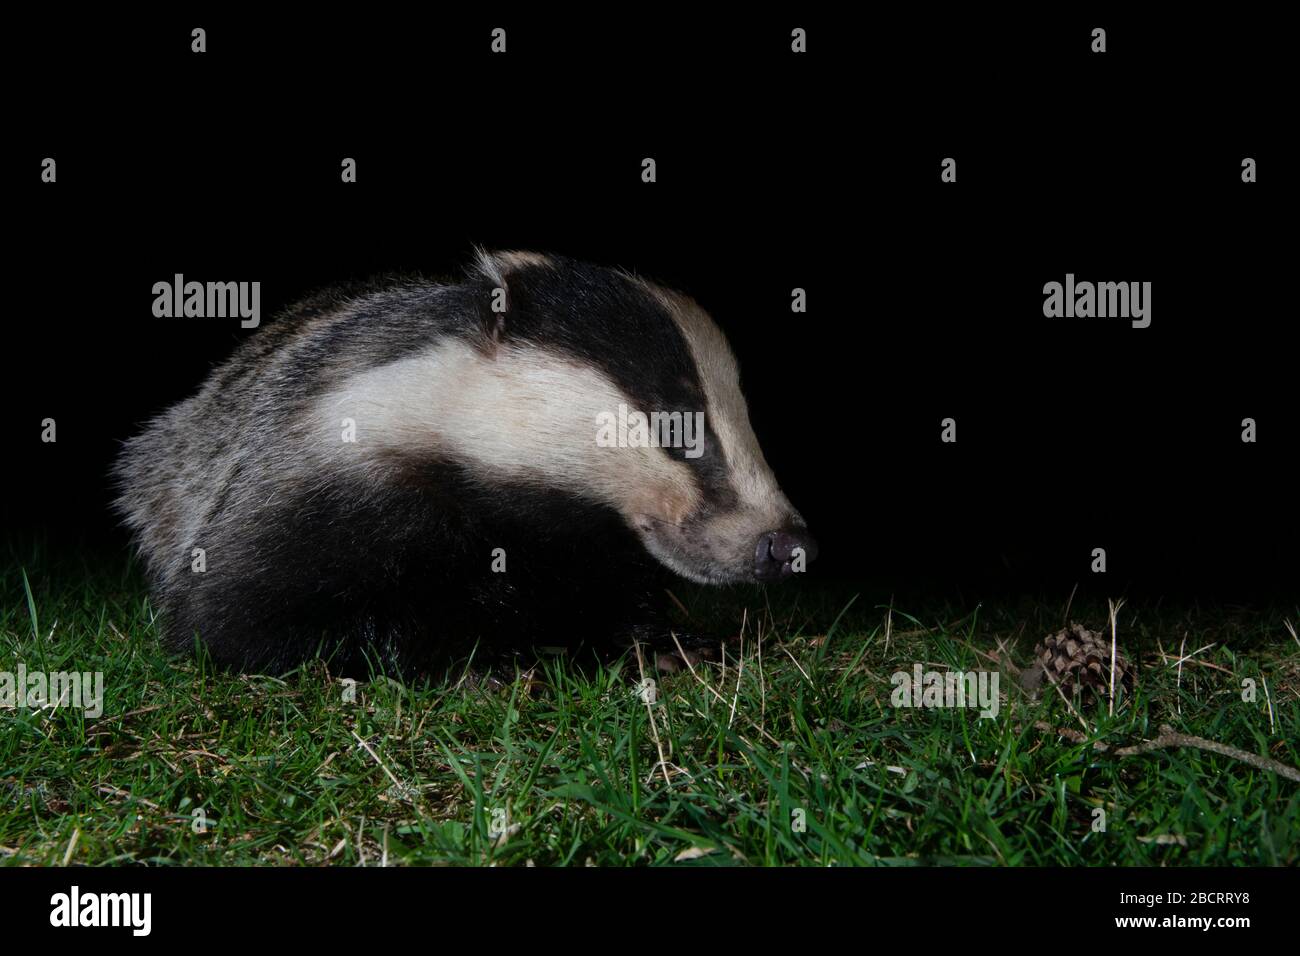 A Eurasian Badger (Meles meles) feeding at night in garden, Ross-shire, Scotland Stock Photo